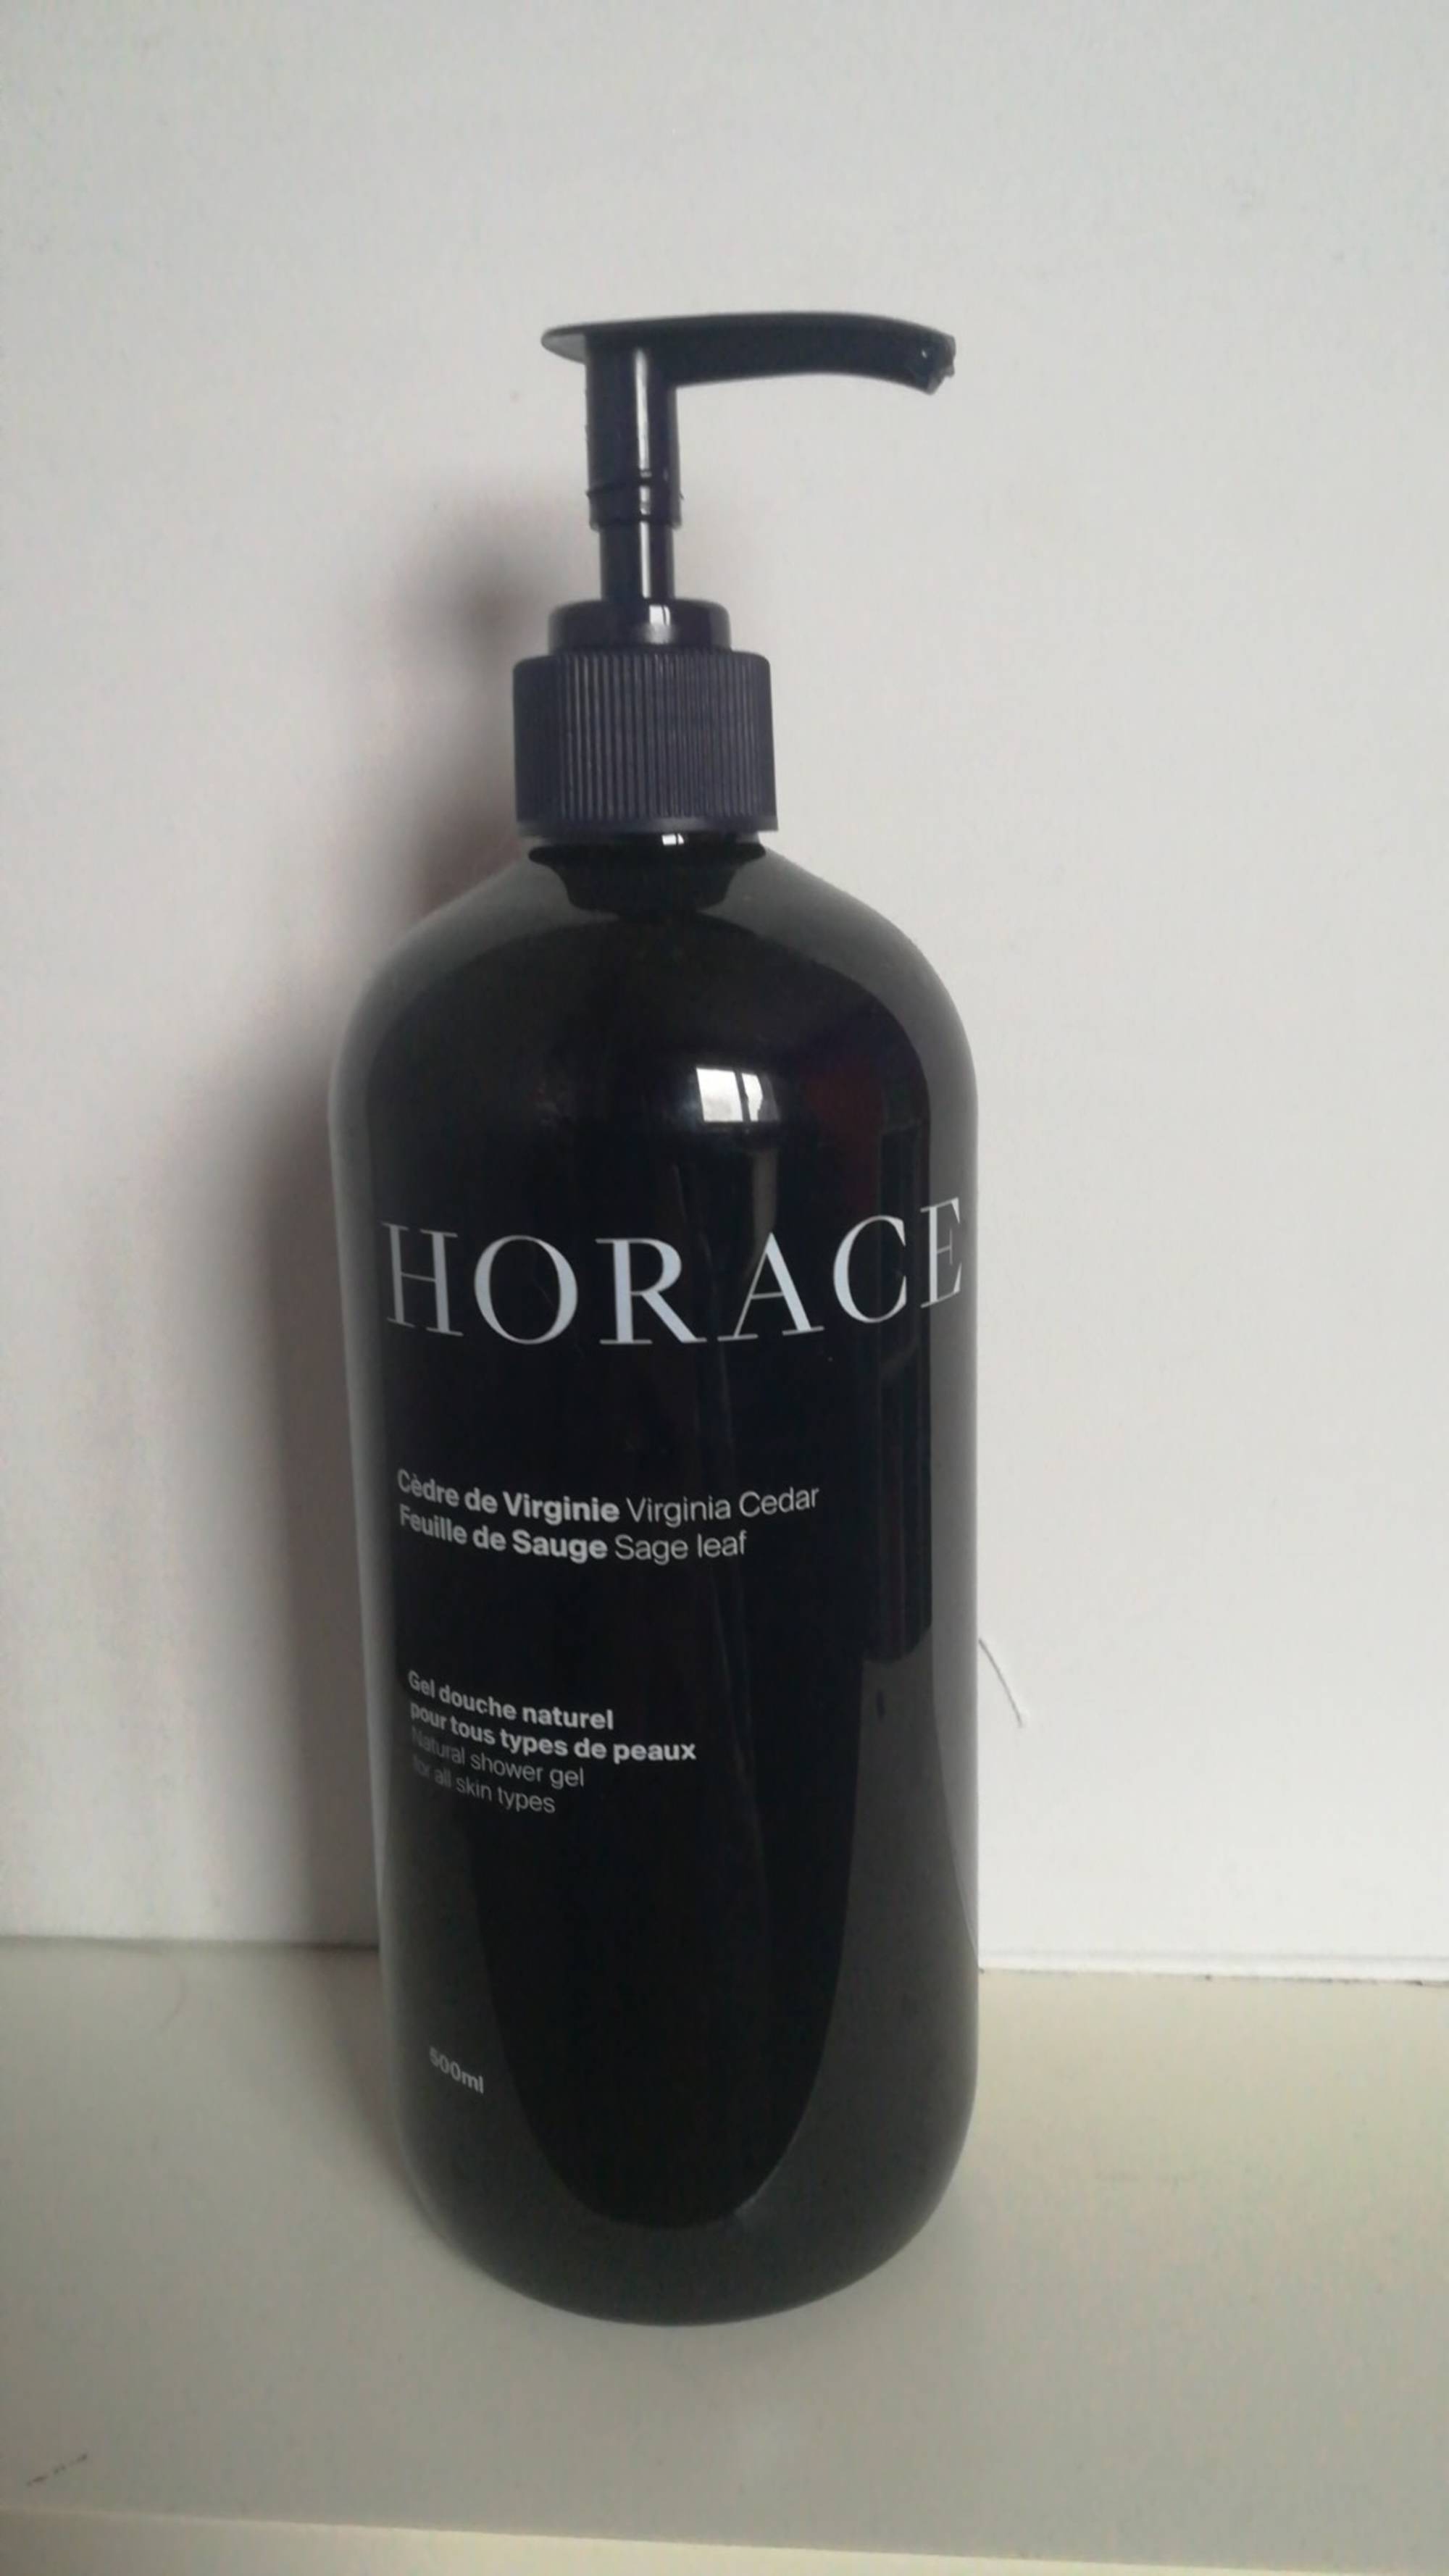 HORACE - Cèdre de virginie feuille de sauge - Gel douche naturel